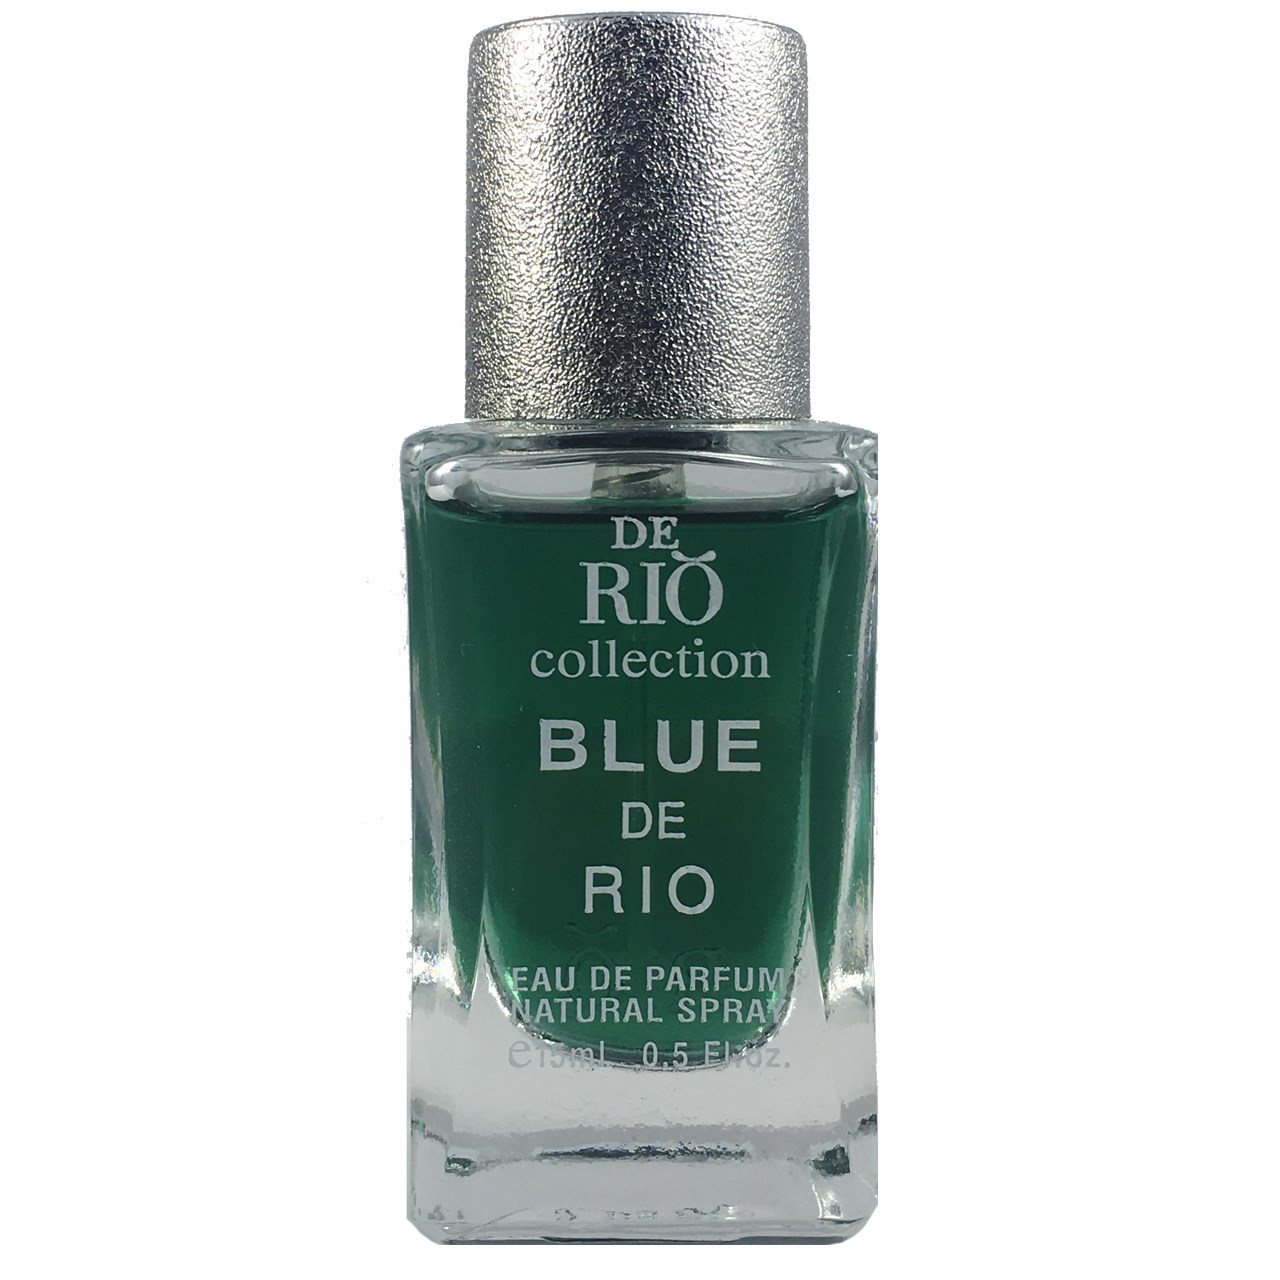 ادو پرفیوم مردانه ریو کالکشن مدل Rio Blue De Rio حجم 15ml -  - 1